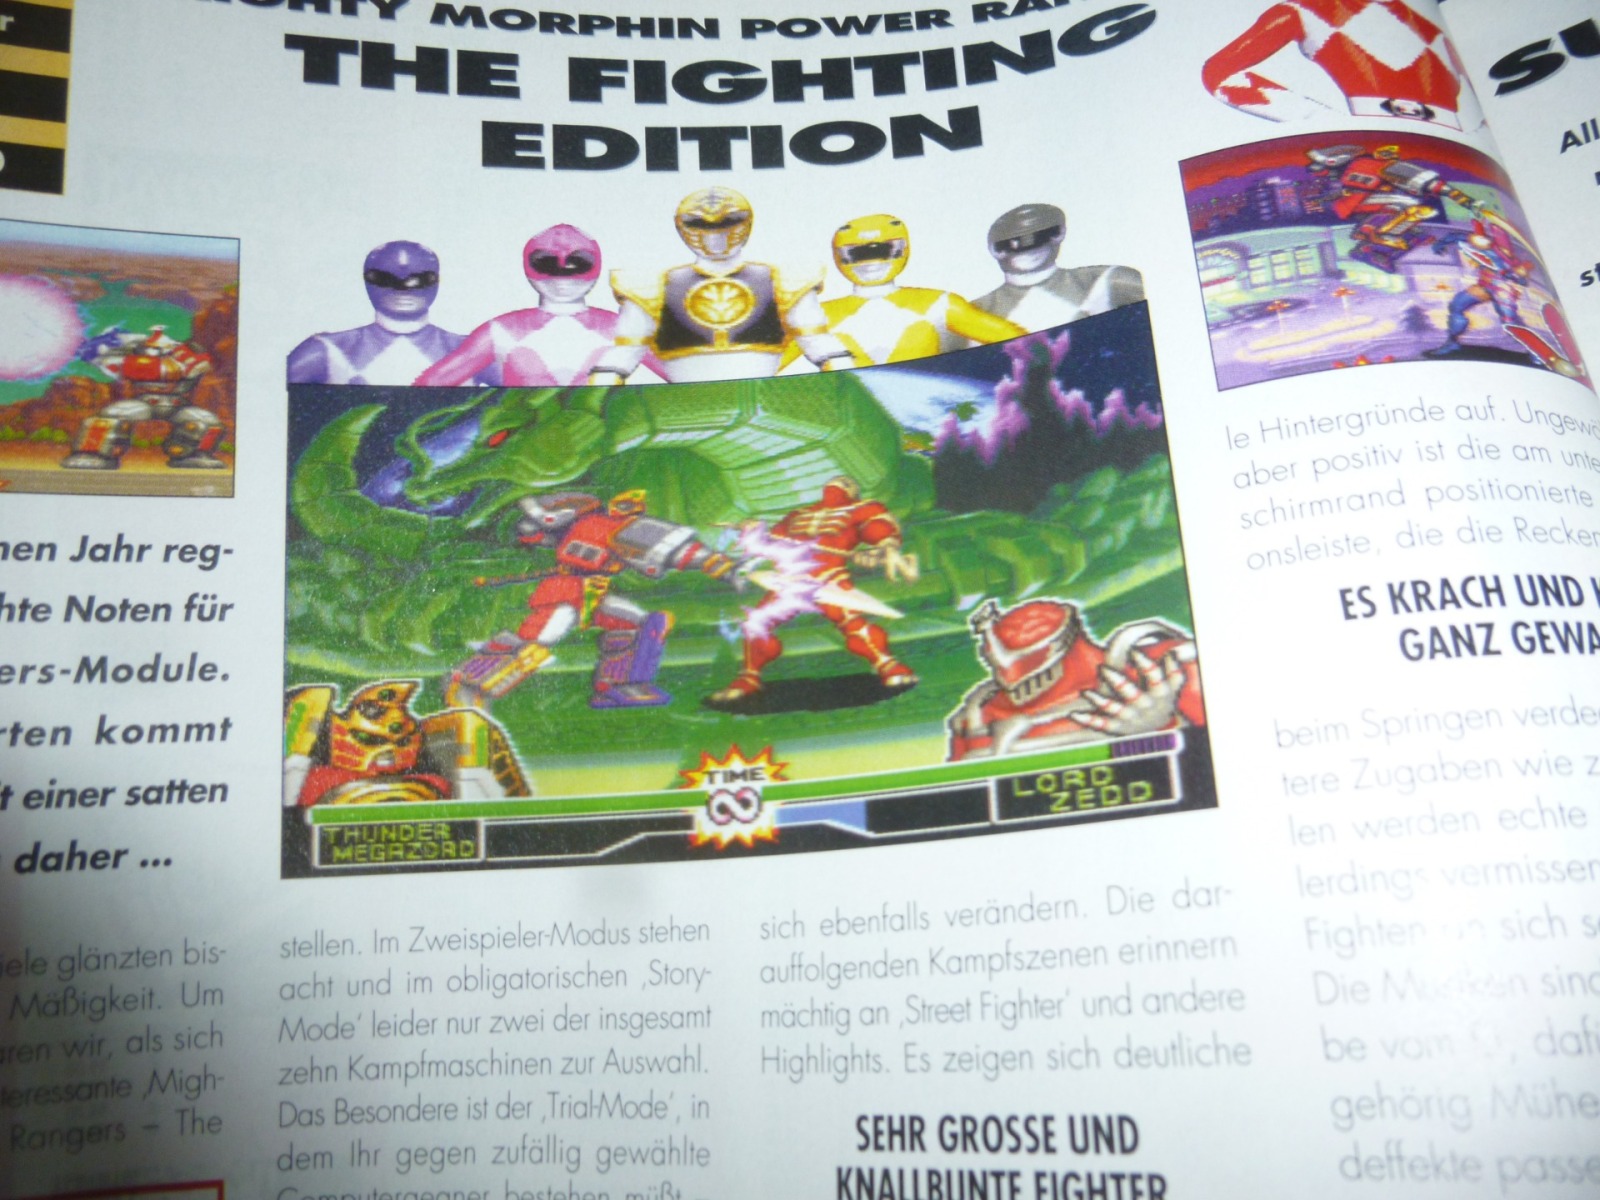 TOTAL Das unabhängige Magazin - 100% Nintendo - Ausgabe 2/96 1996 14